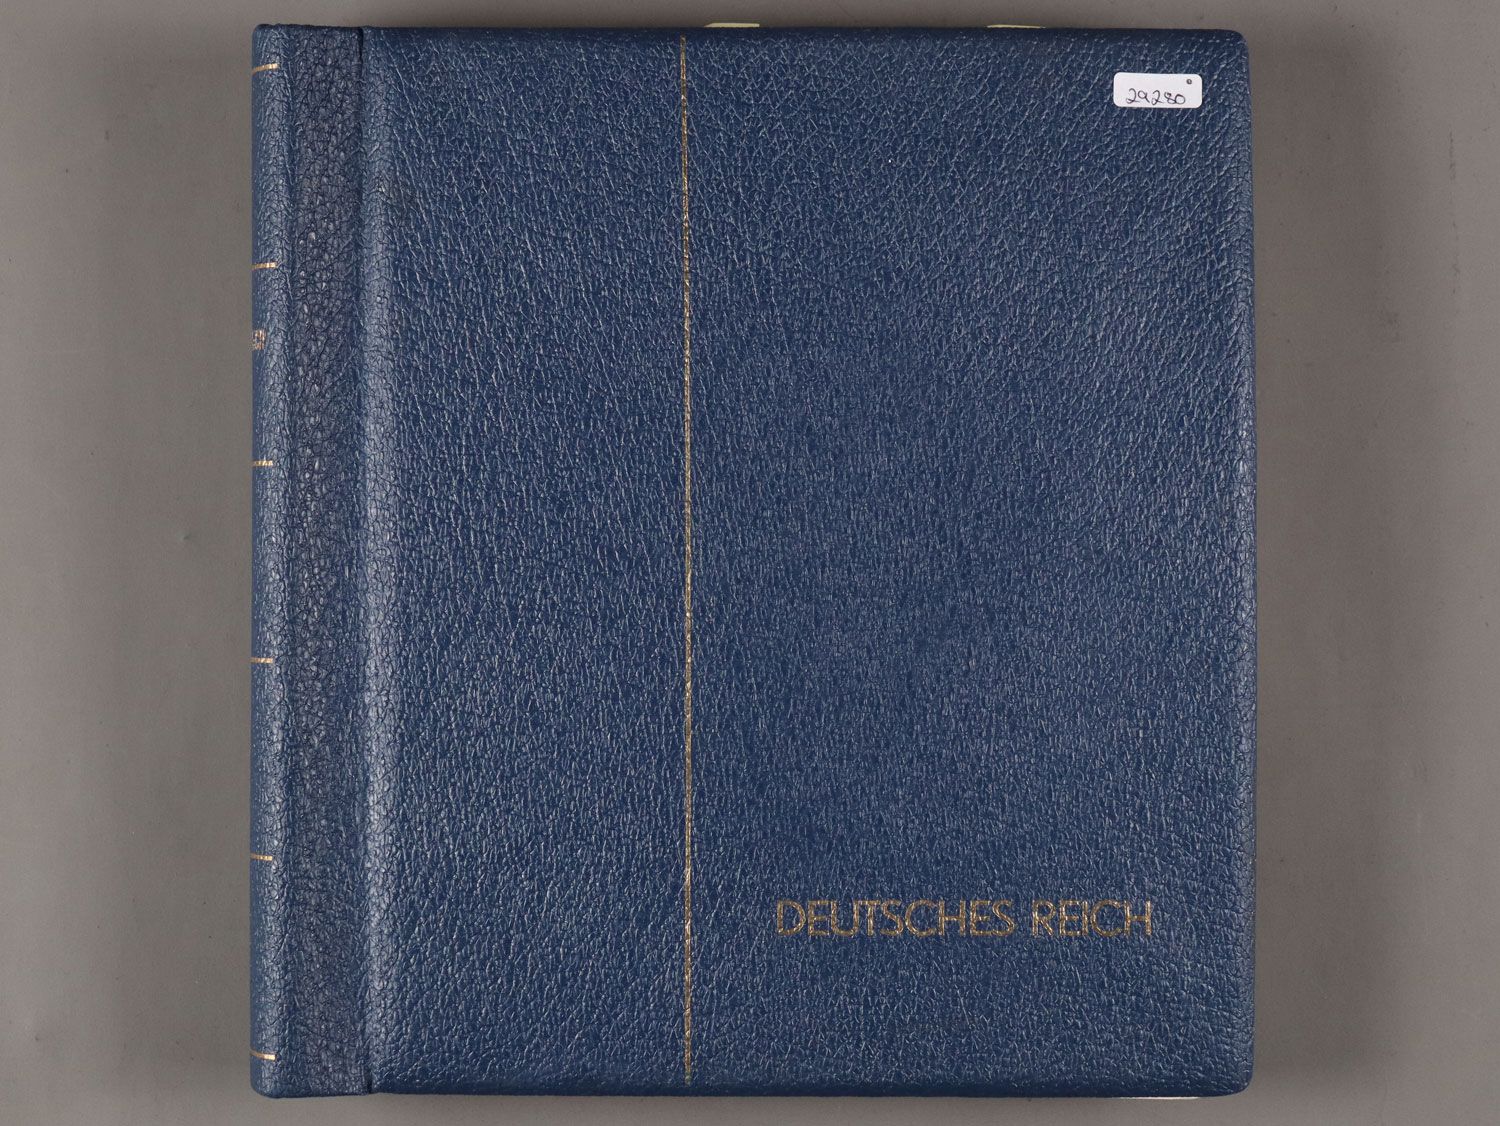 Null Album de timbres - album bleu, "phare", Reich allemand 1933 - 1945, y compr&hellip;